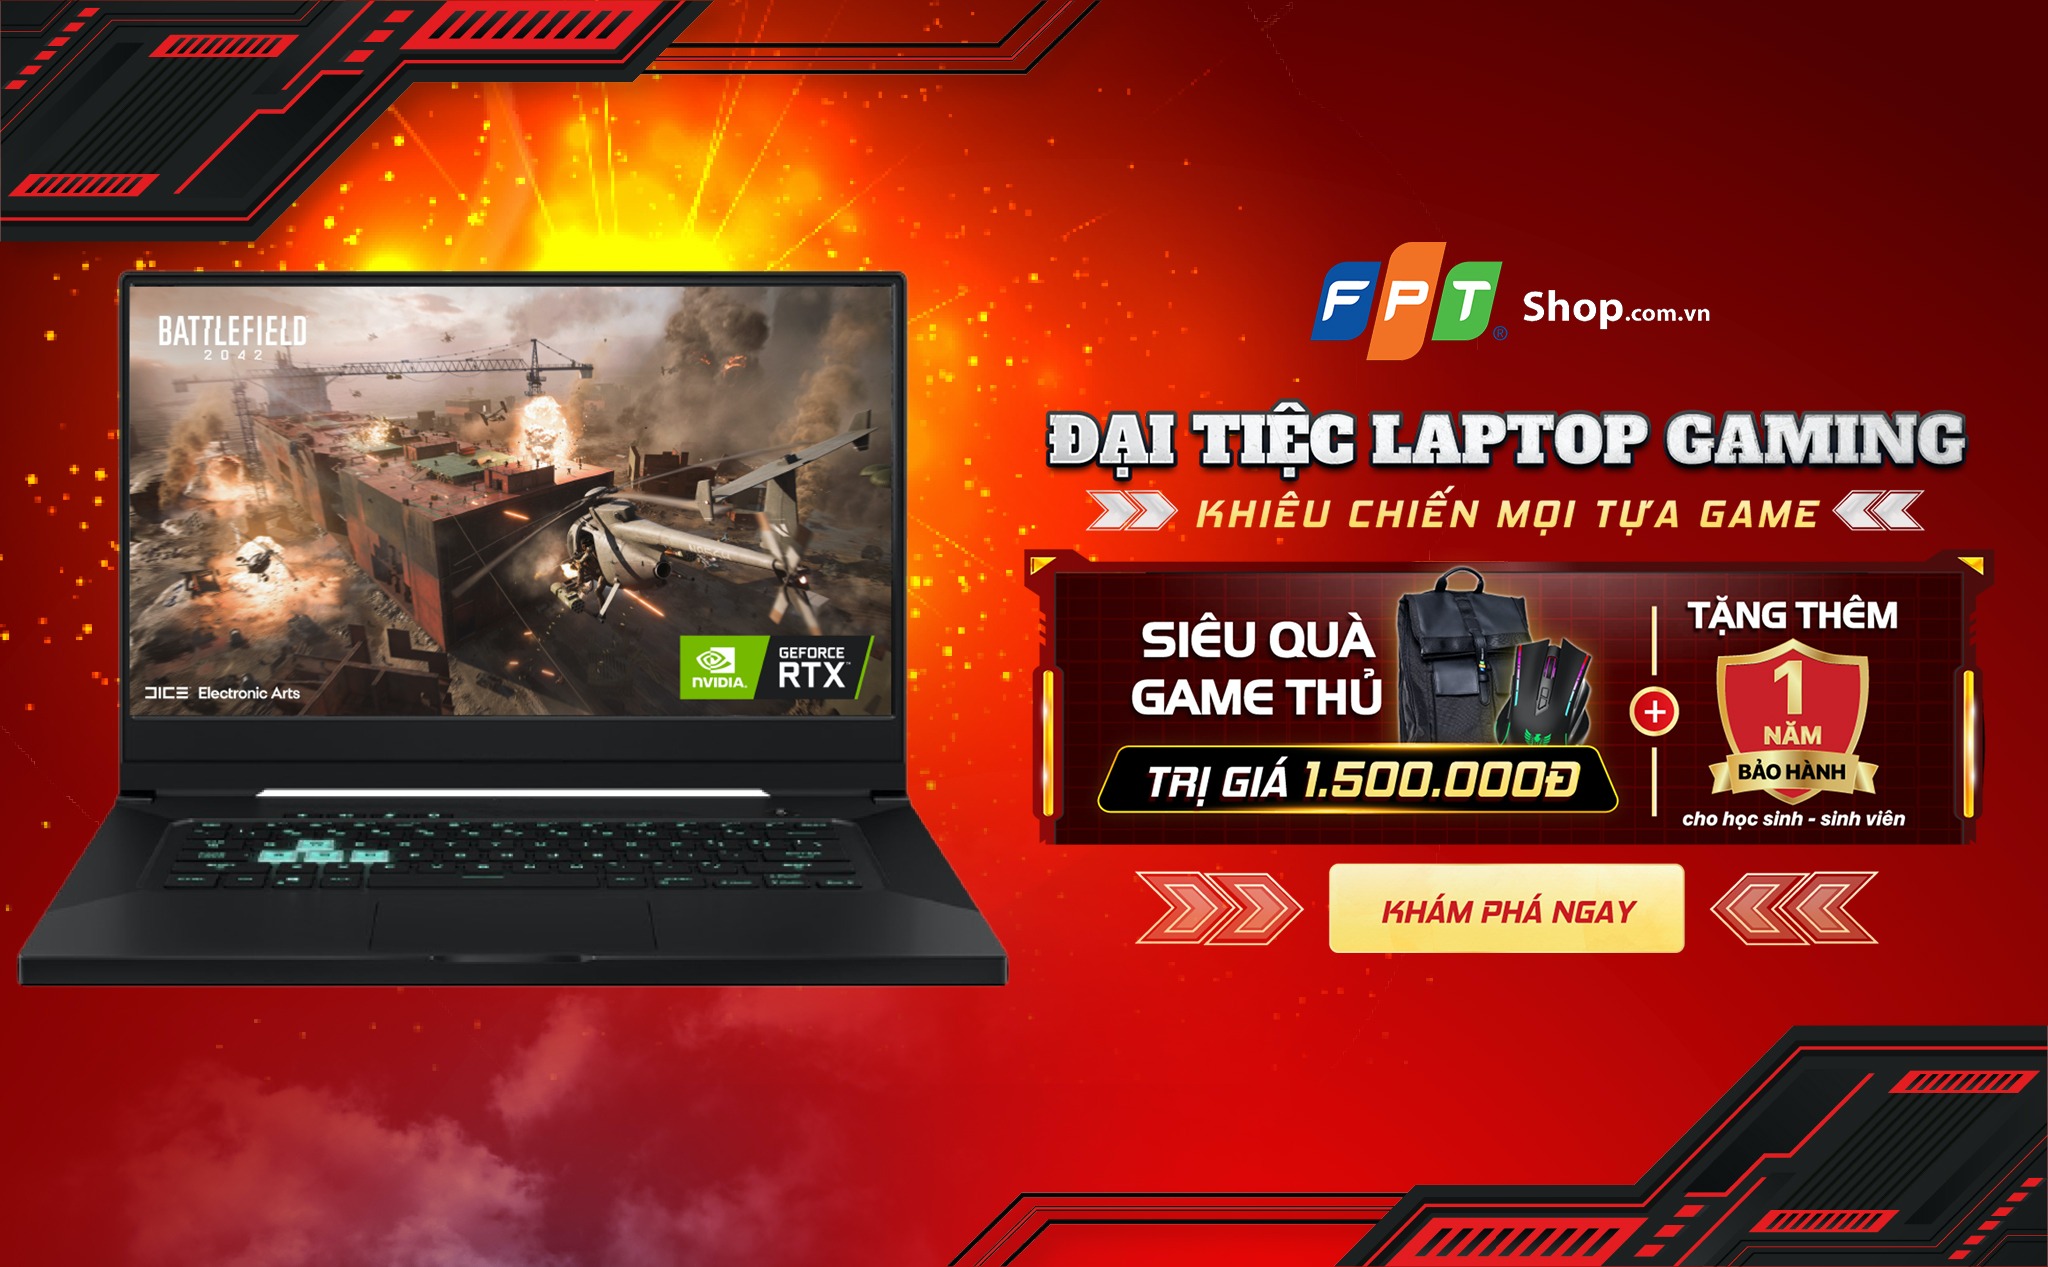 [QC] FPT Shop giảm giá laptop gaming đến 5 triệu, tặng quà “khủng”